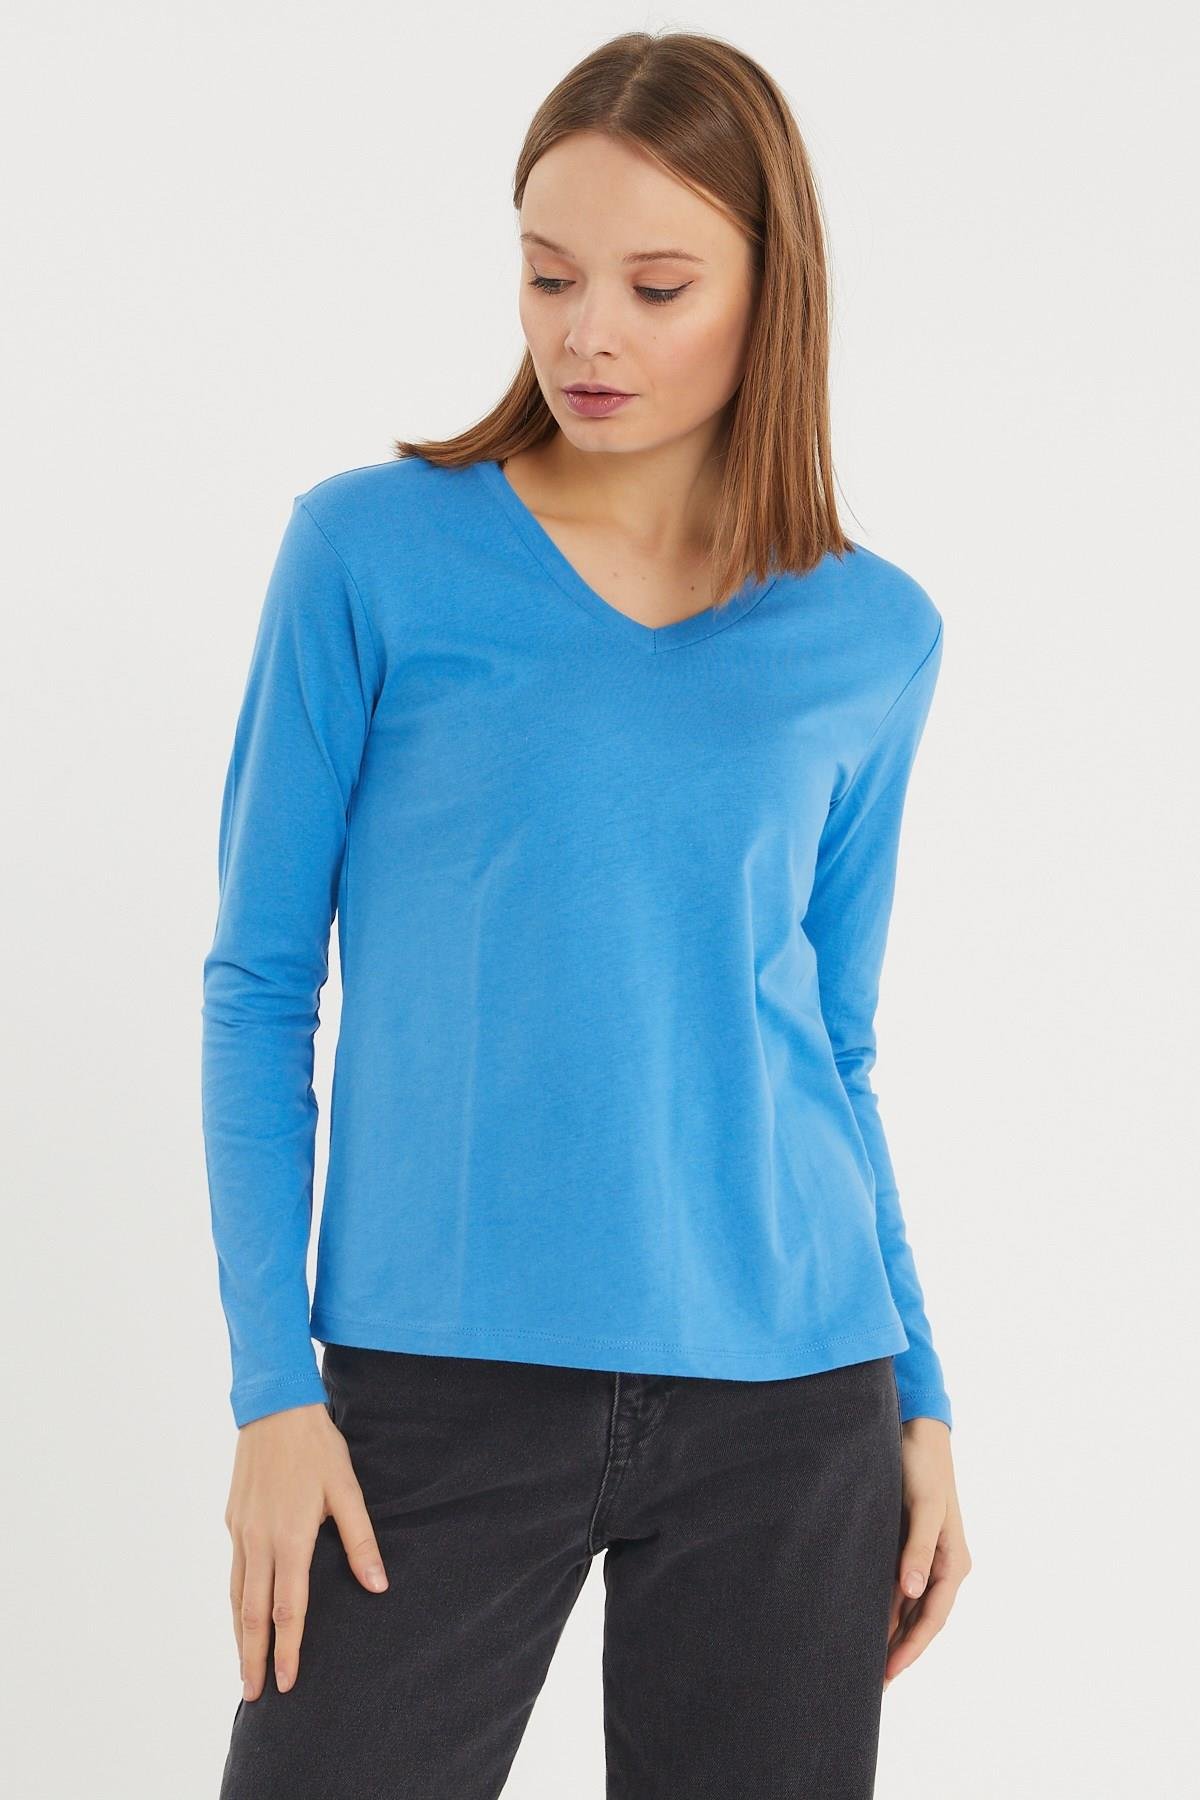 Kadın Uzun Kollu V Yaka Basic Pamuklu Örme Bluz - Mavi